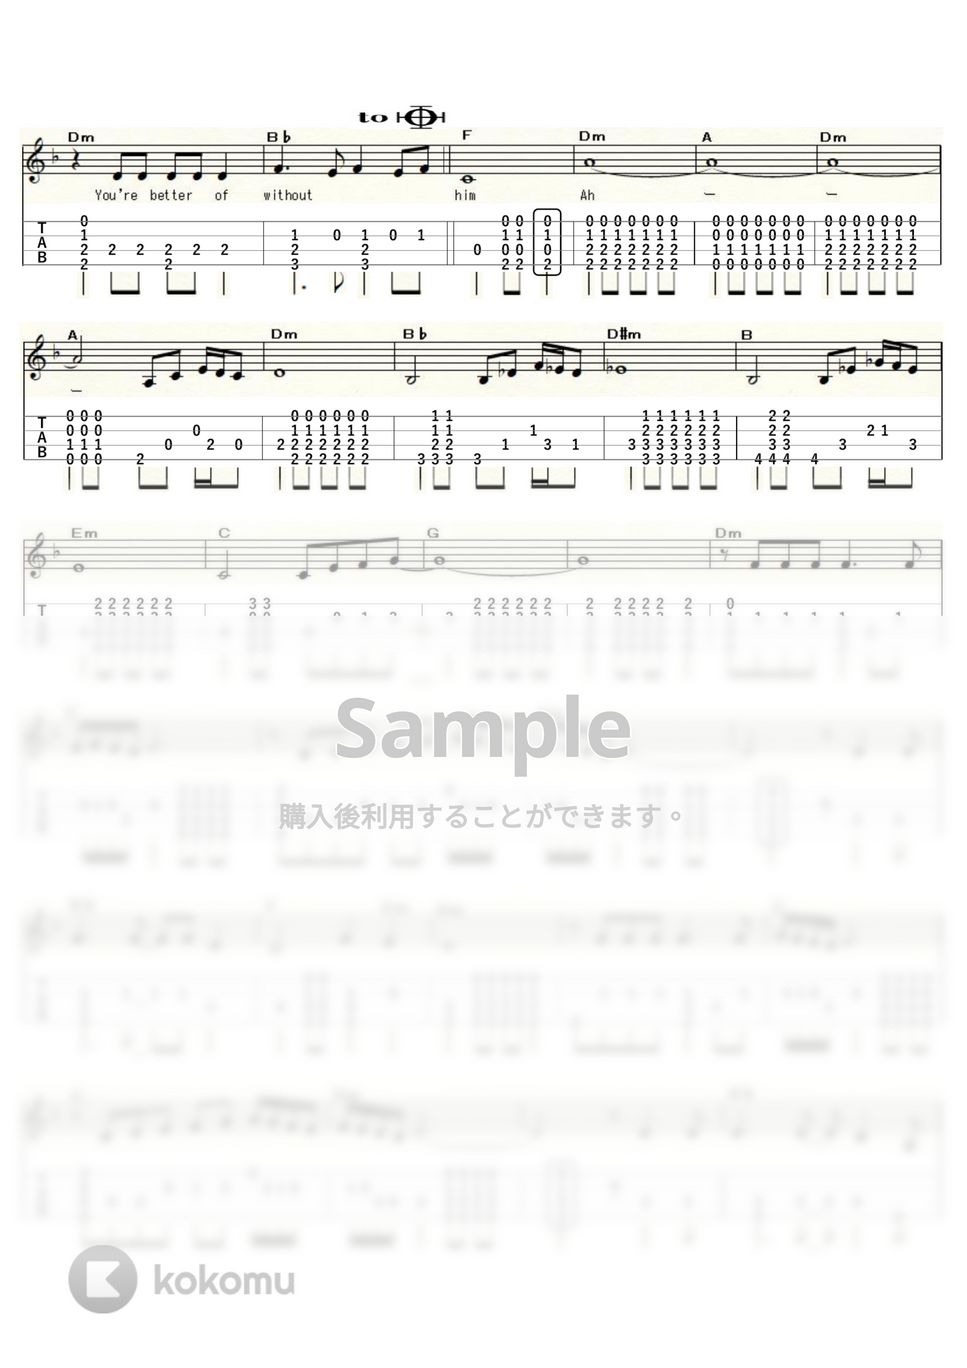 ショッキング・ブルー - 悲しき鉄道員 (ｳｸﾚﾚｿﾛ/Low-G/中級～上級) by ukulelepapa